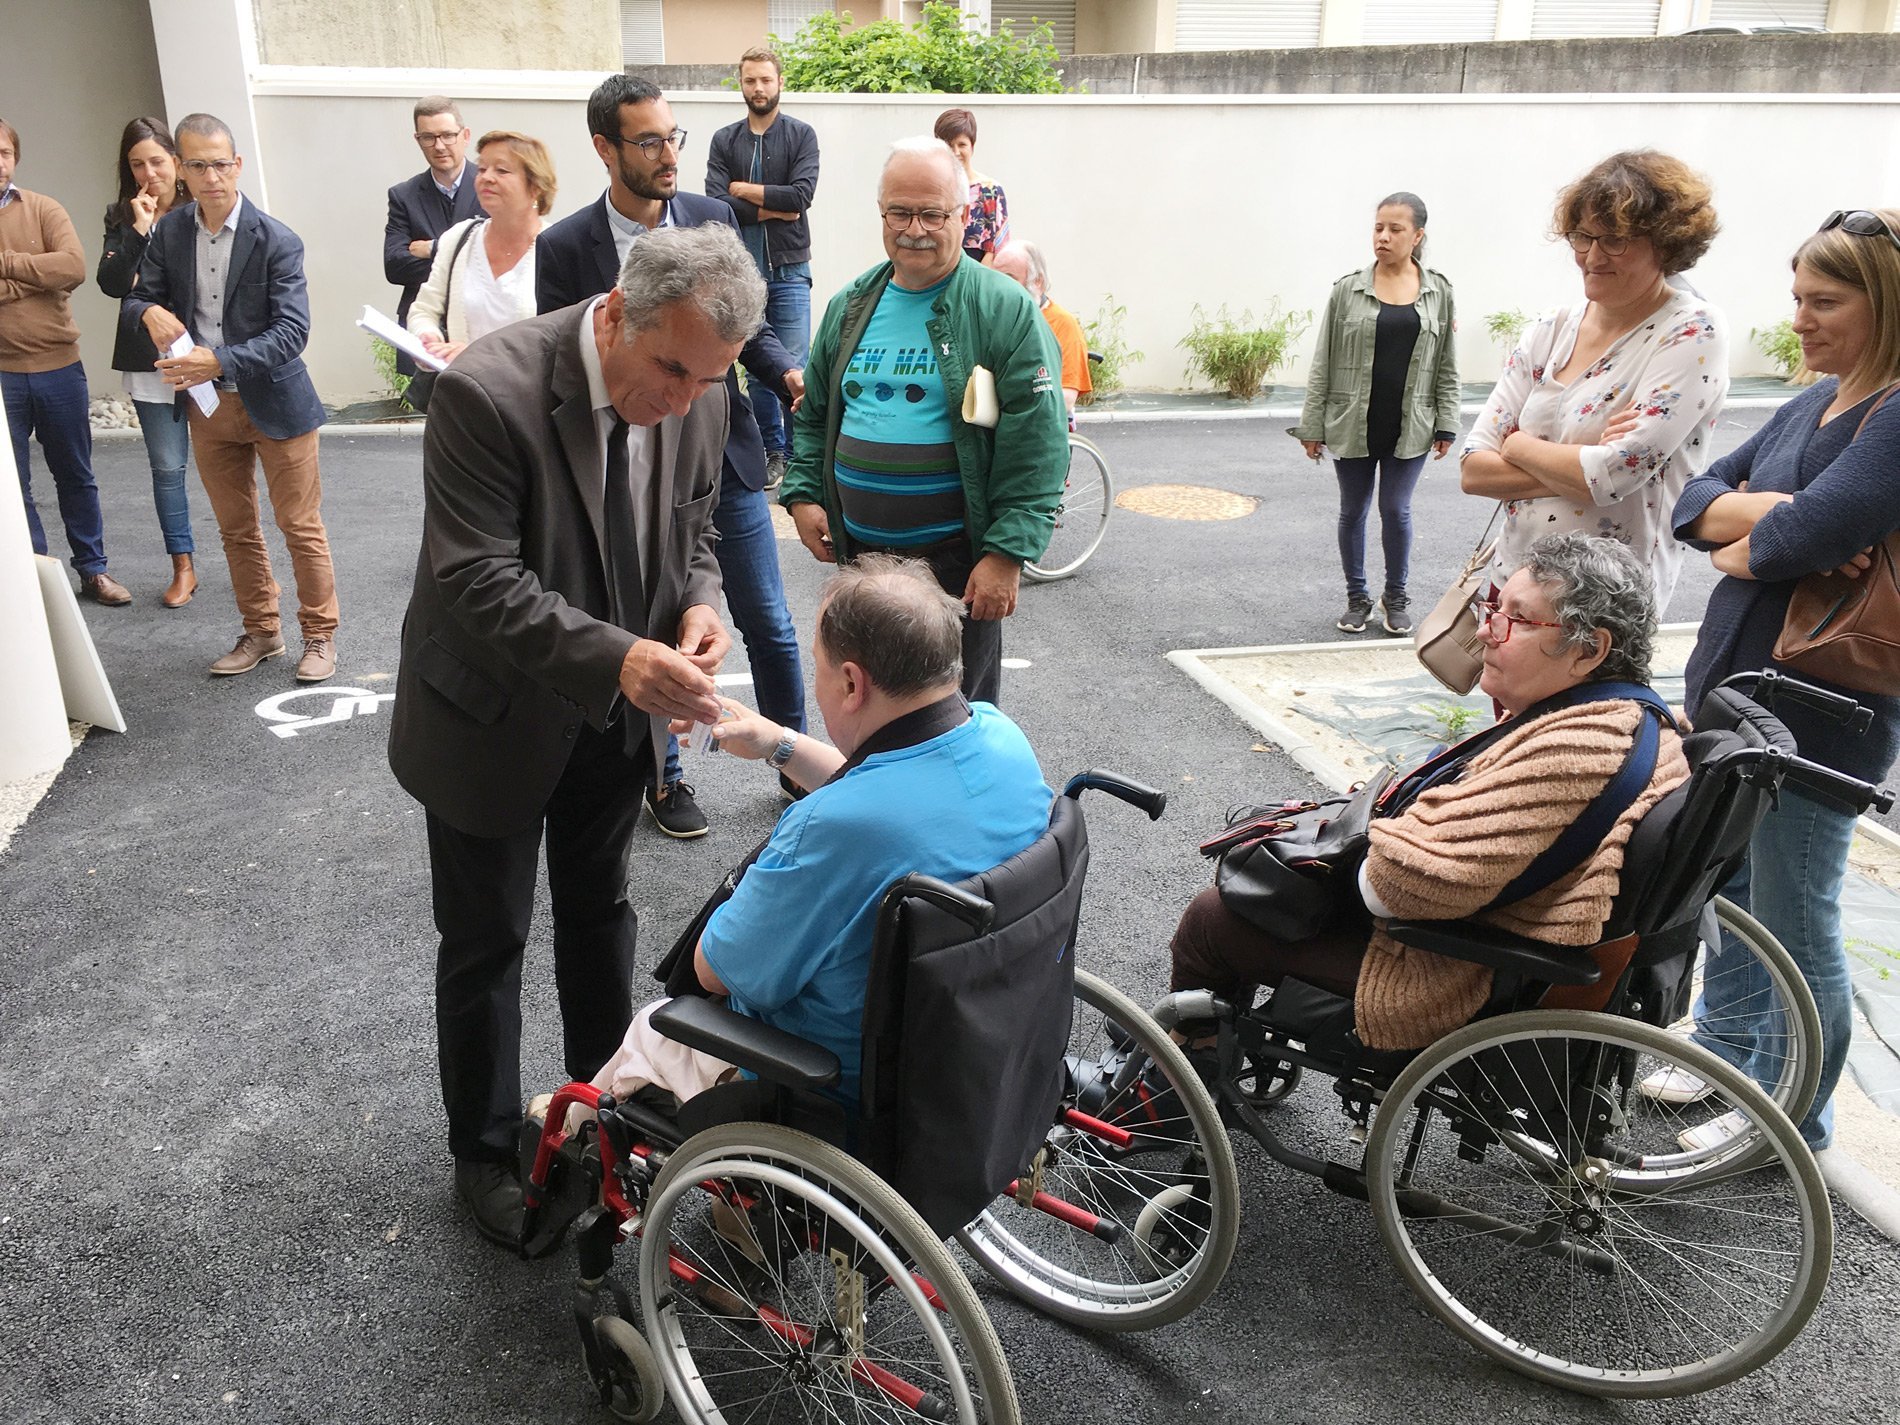 Parmis les 20 nouveaux logements à La Roche sur Yon, 4 sont destinés aux personnes en situation de handicap, grâce au partenariat avec Handi Espoir